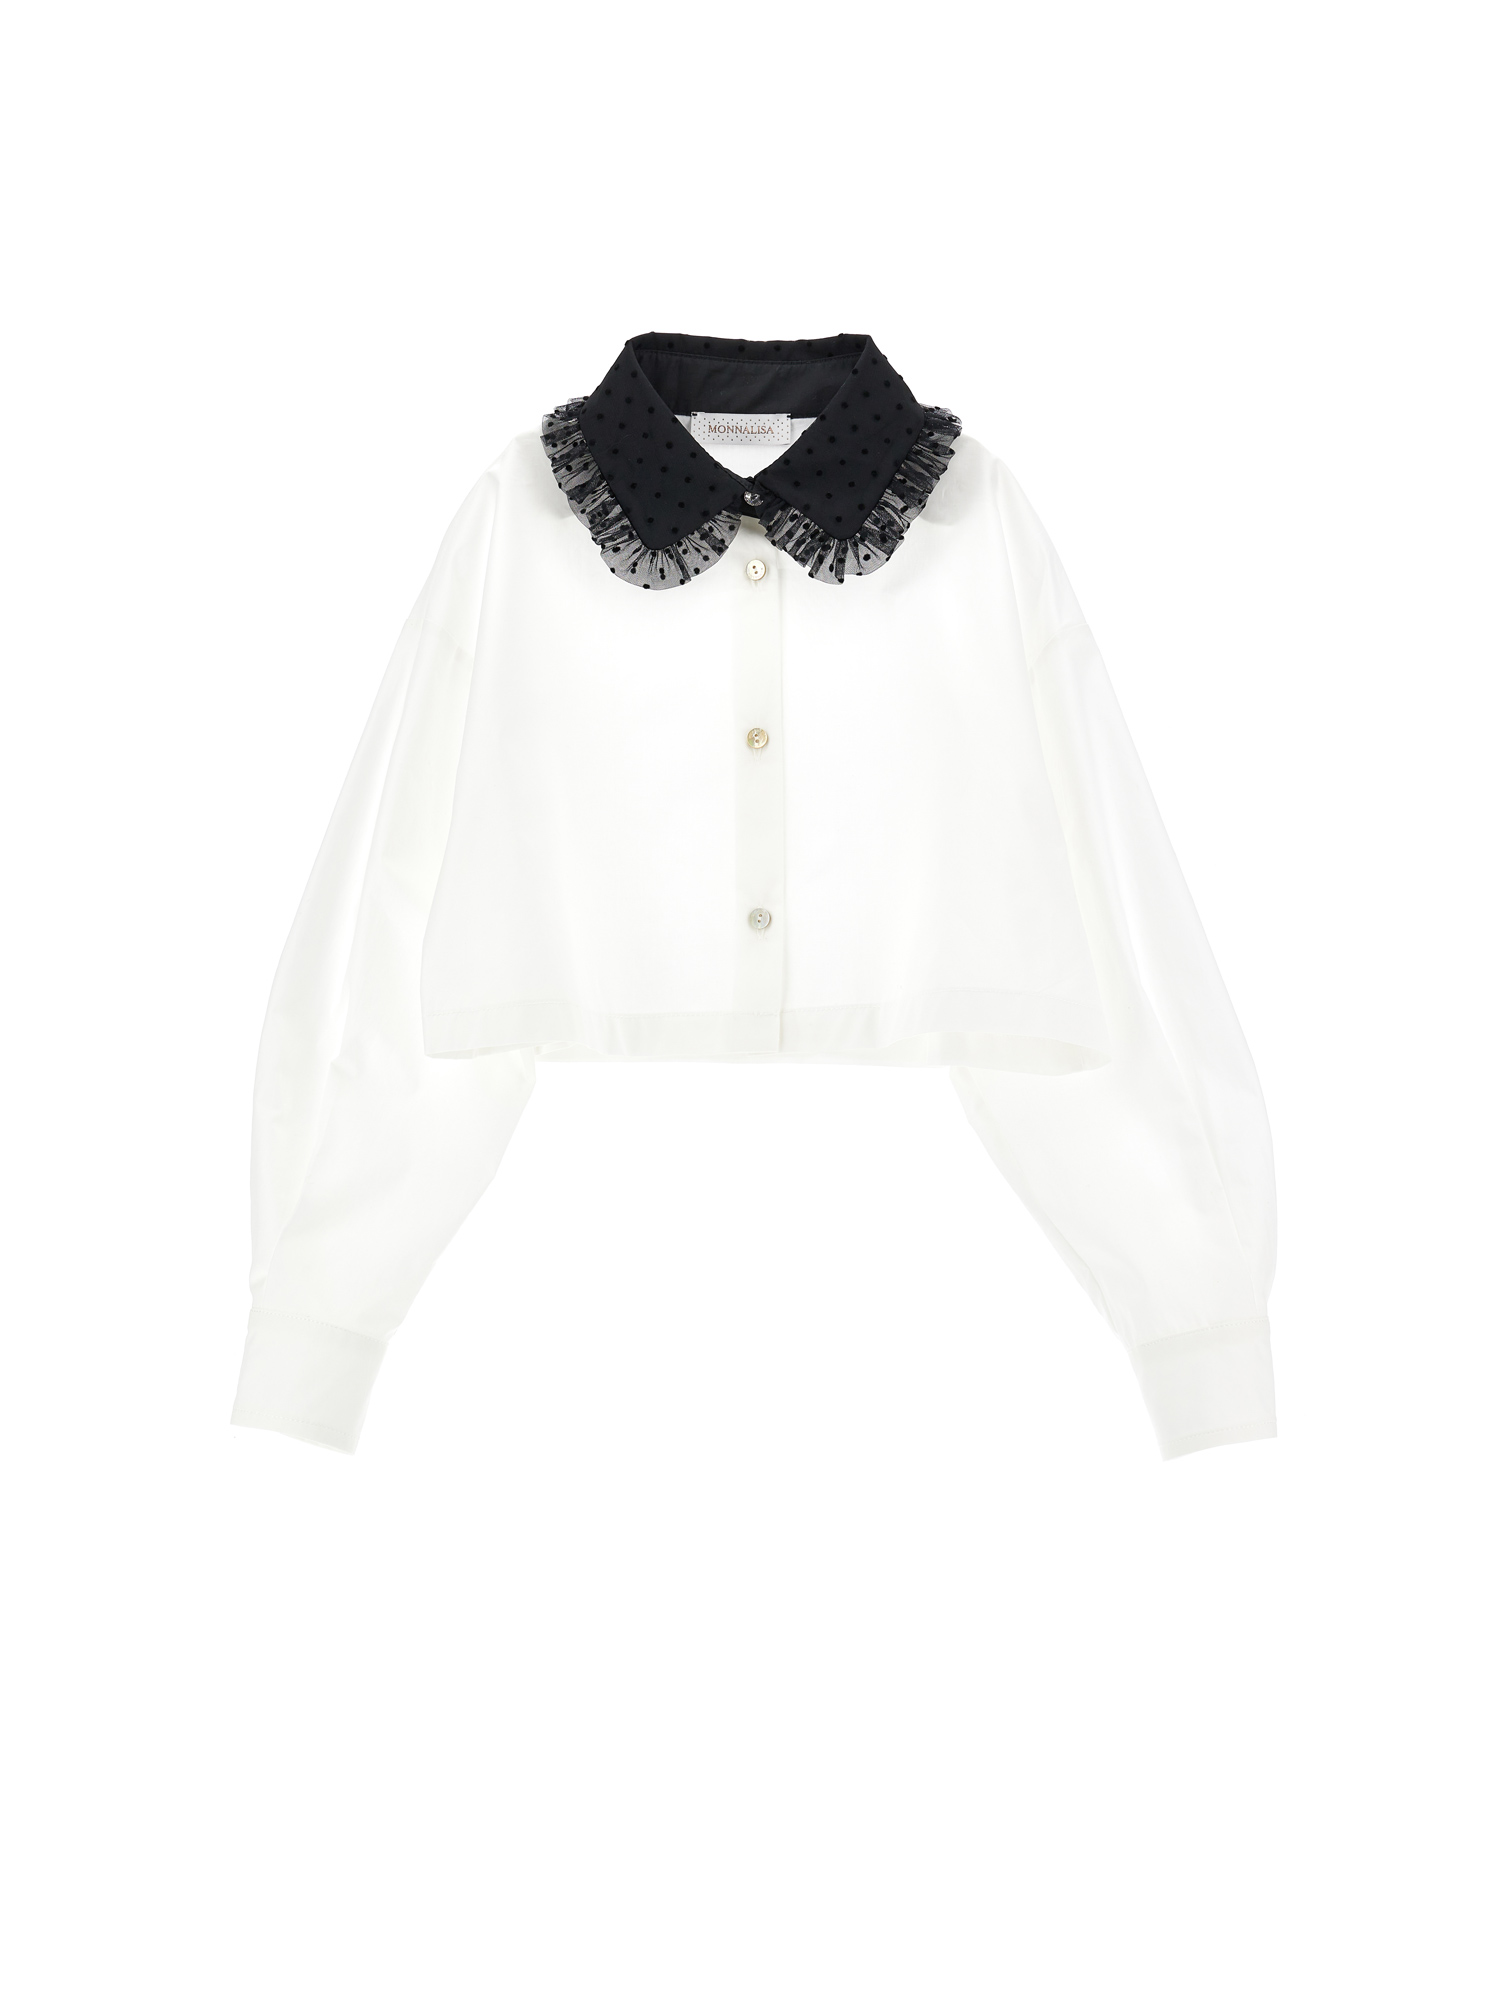 Monnalisa Velvet Collar Cropped Shirt In Cream + Black